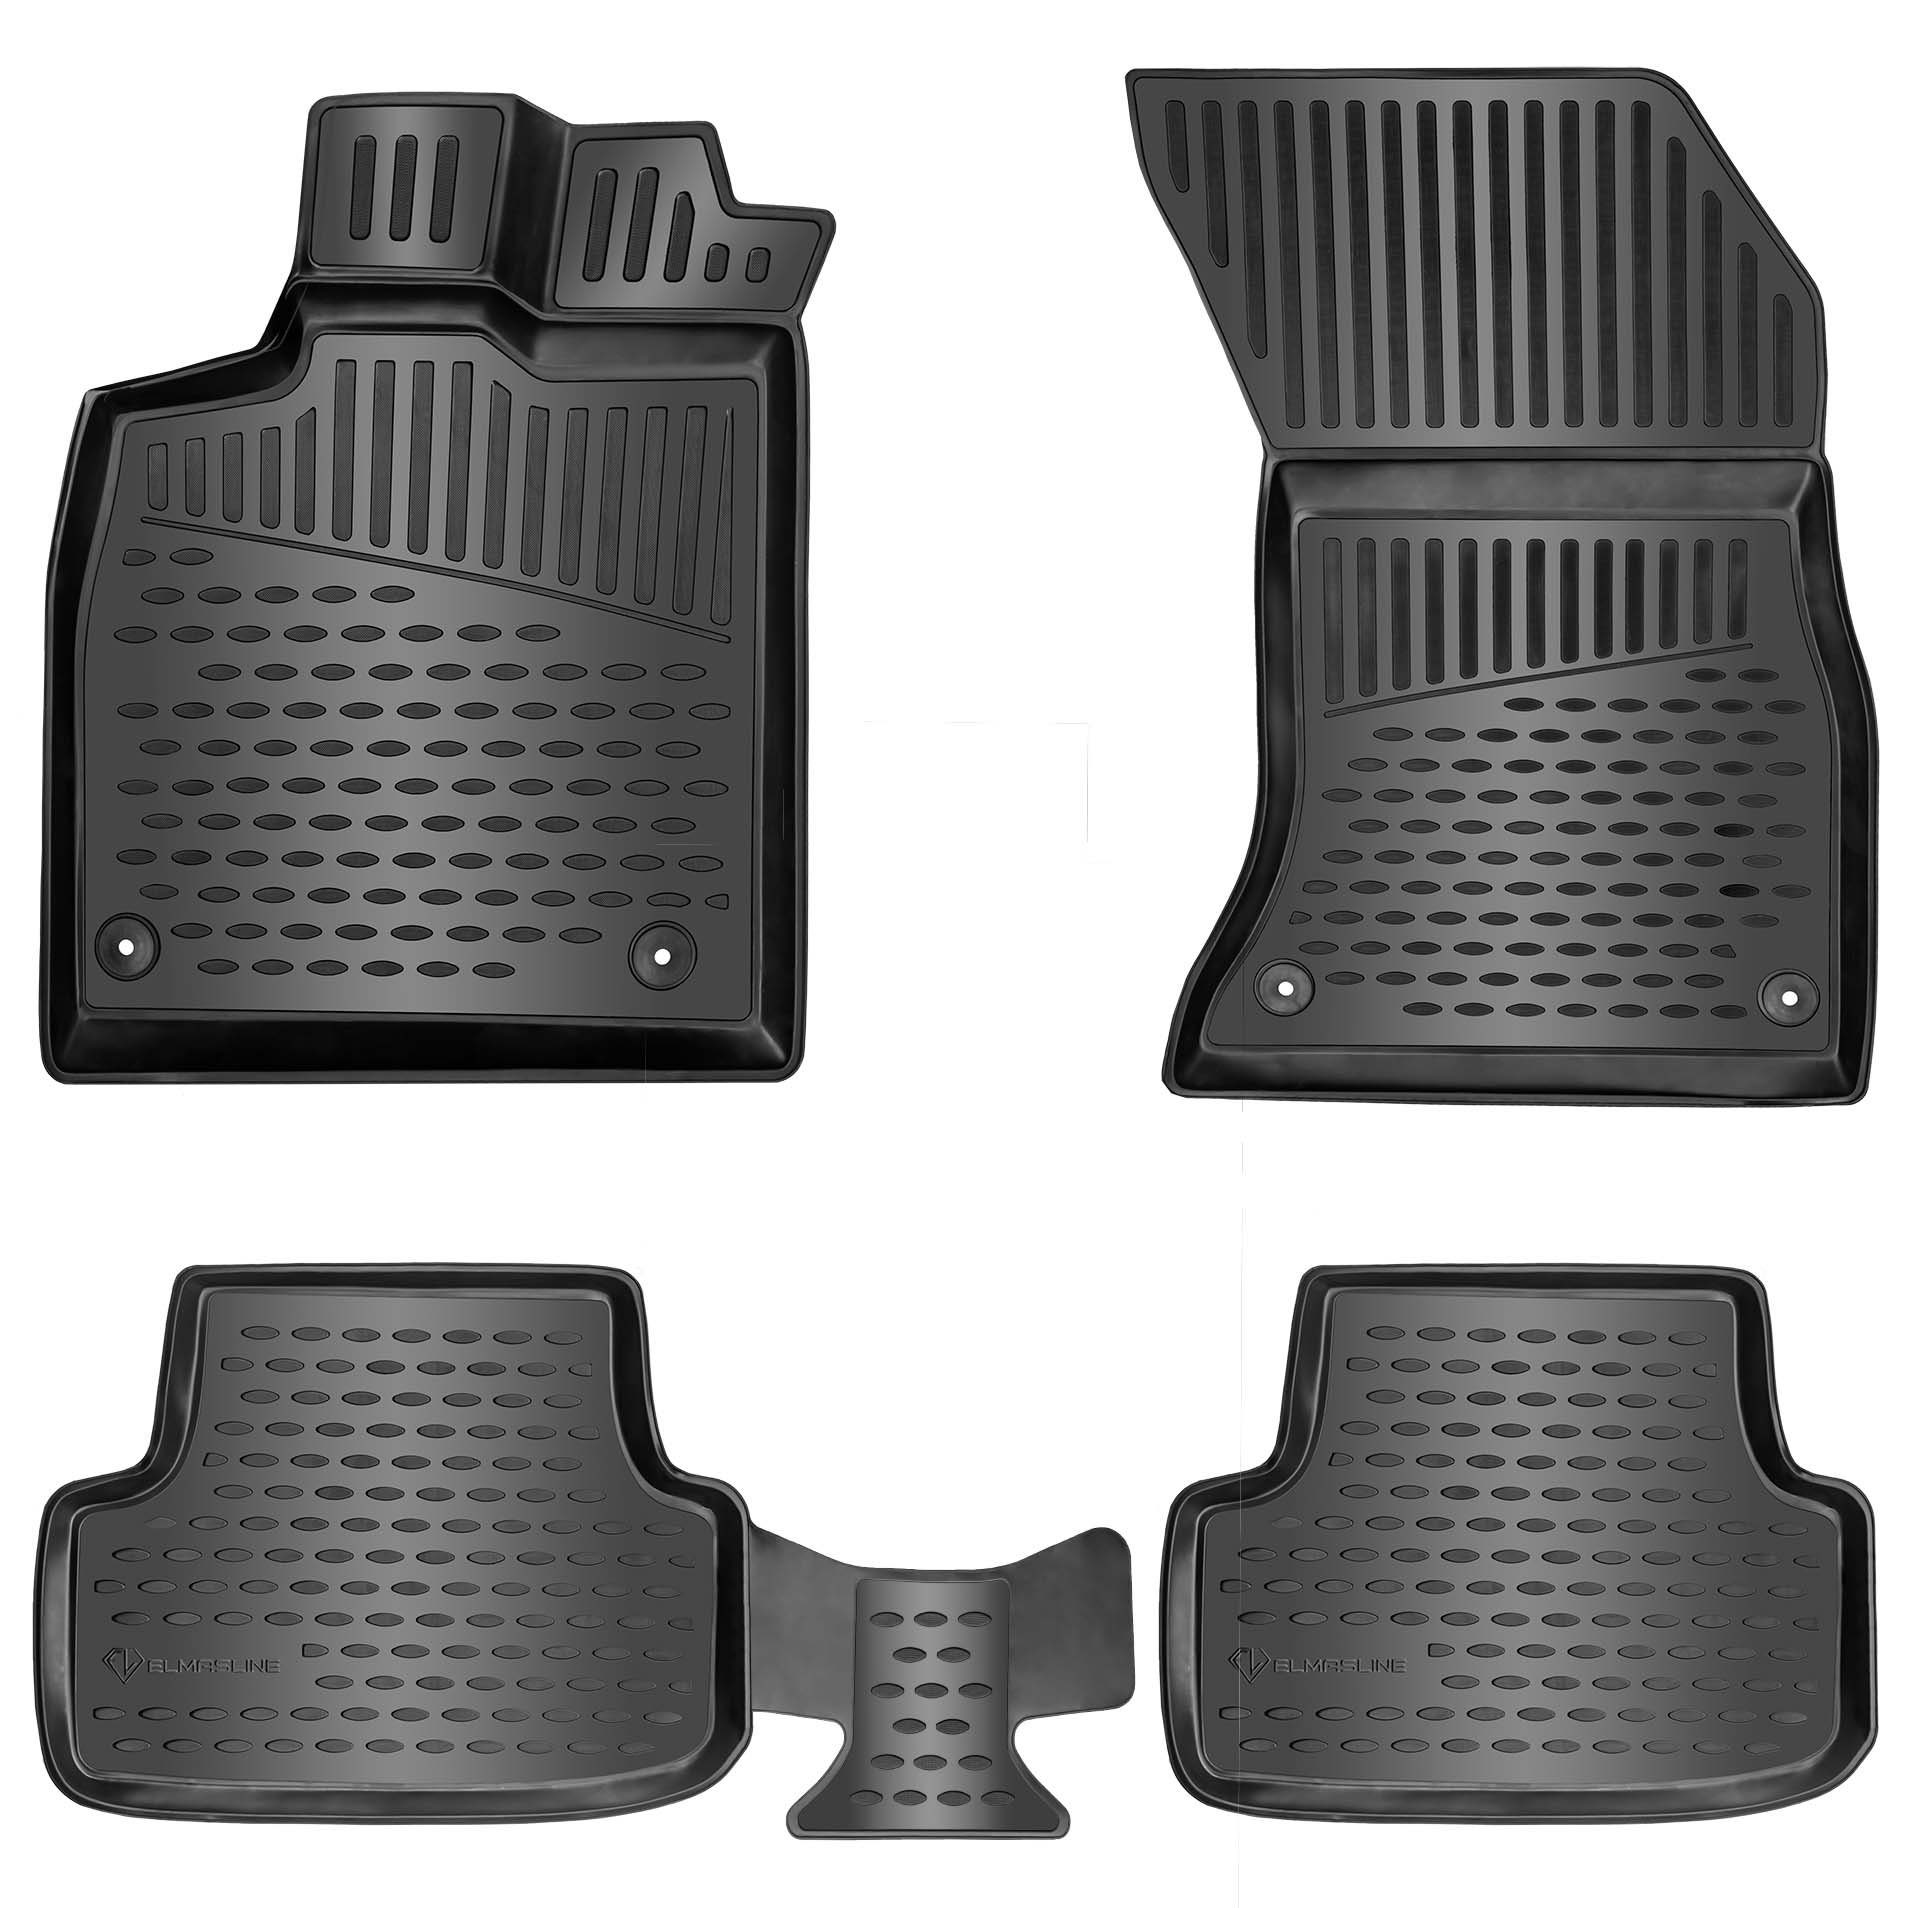 ELMASLINE Auto-Fußmatten Gummi (4 St), für VOLVO C30 (2006-2013) - 3D Gummimatten mit extra hohem Rand für mehr Schutz - Passend für Baujahre:, 2006 - 2013